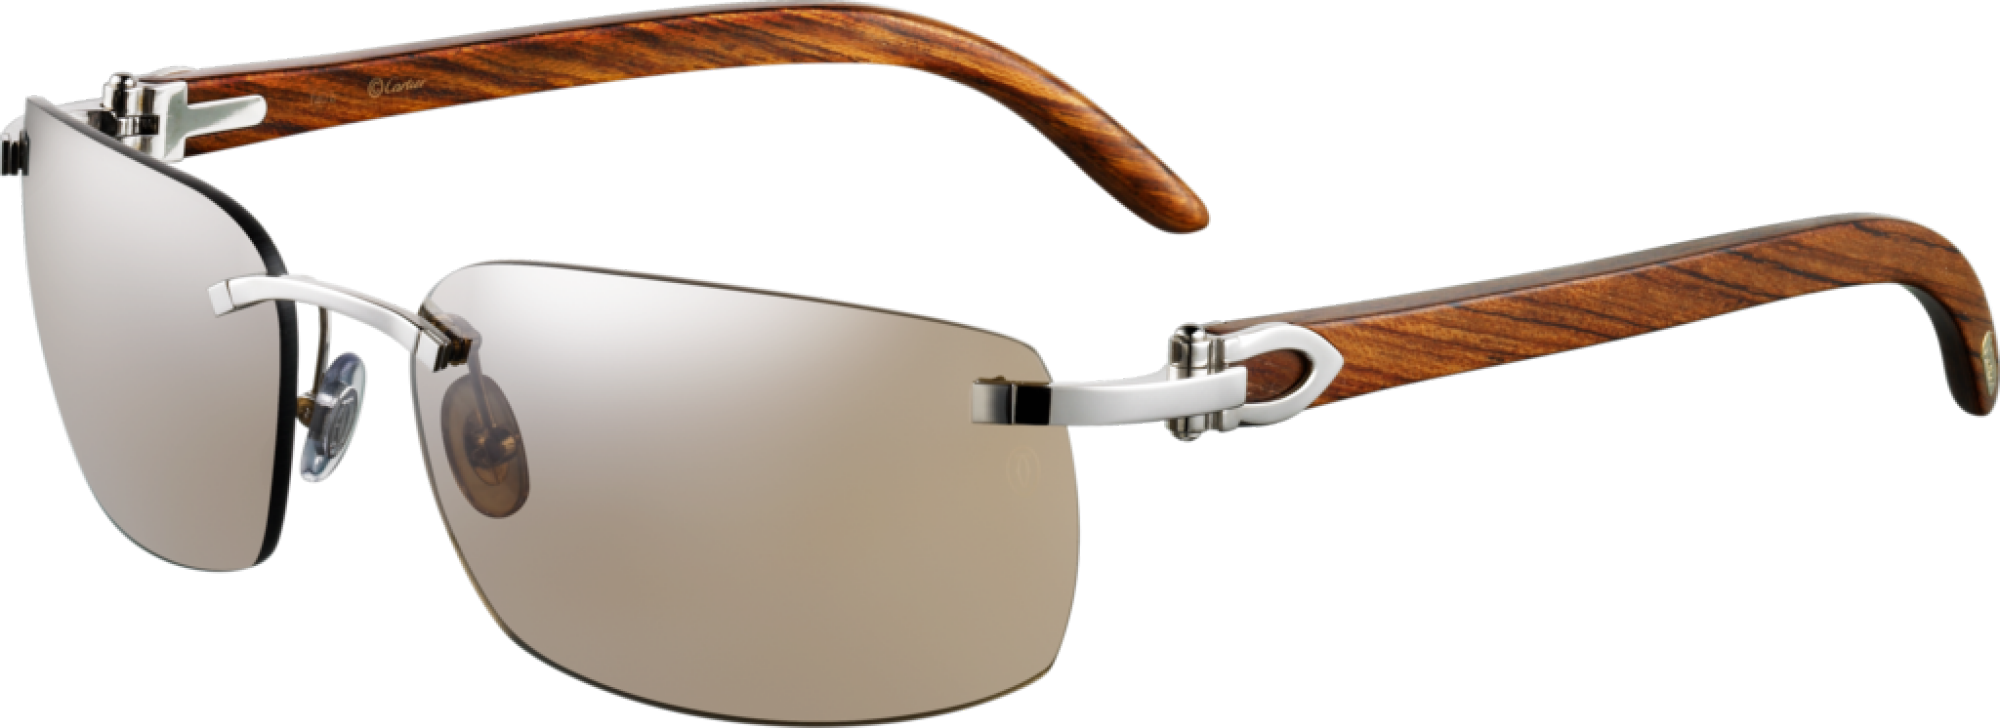 Authentic Cartier Sunglasses - Cartier Calvi-t8200760 - Wood (2000x728), Png Download